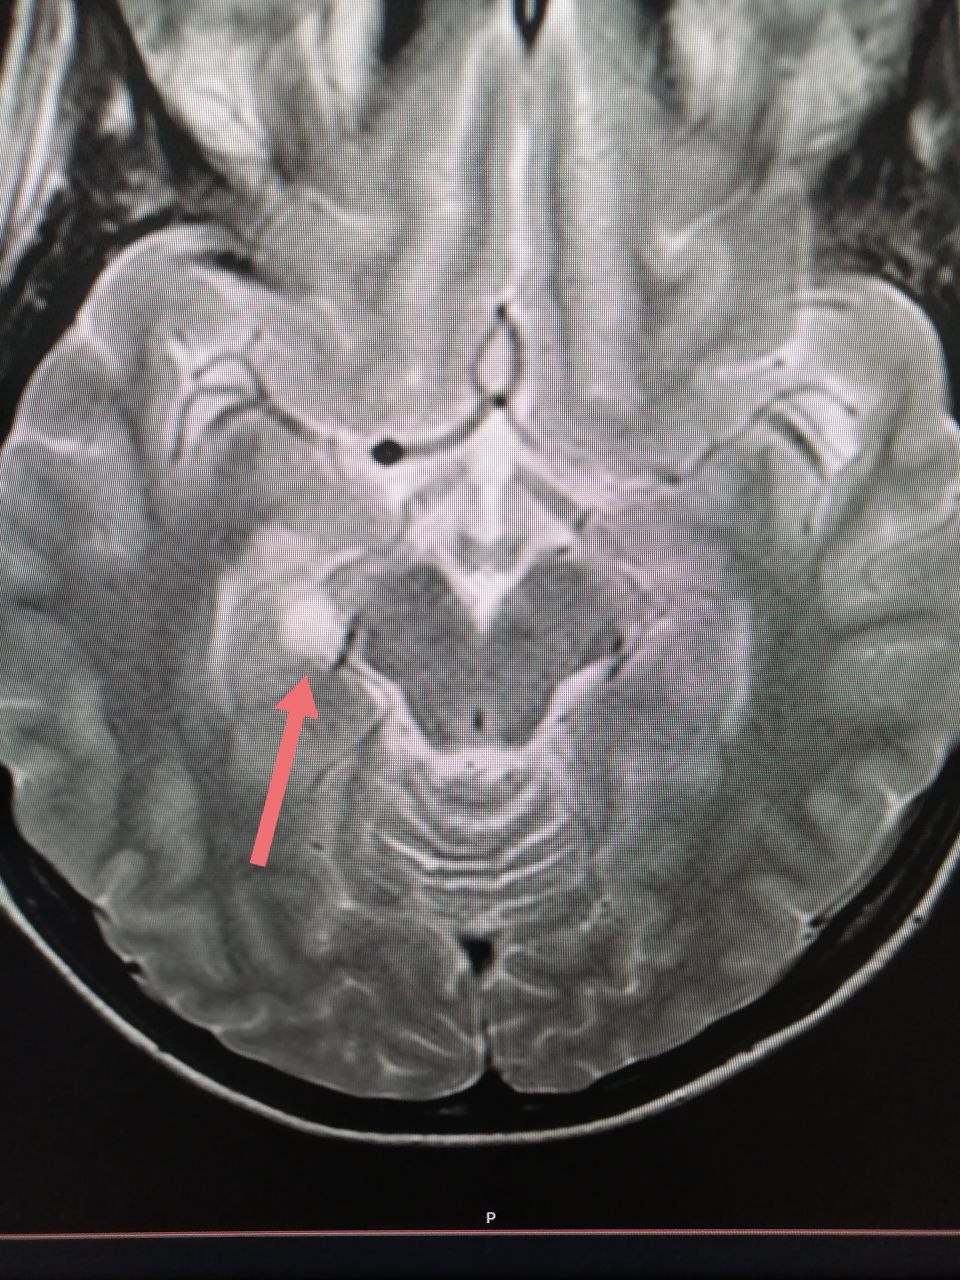 Аневризма головного мозга фото на мрт